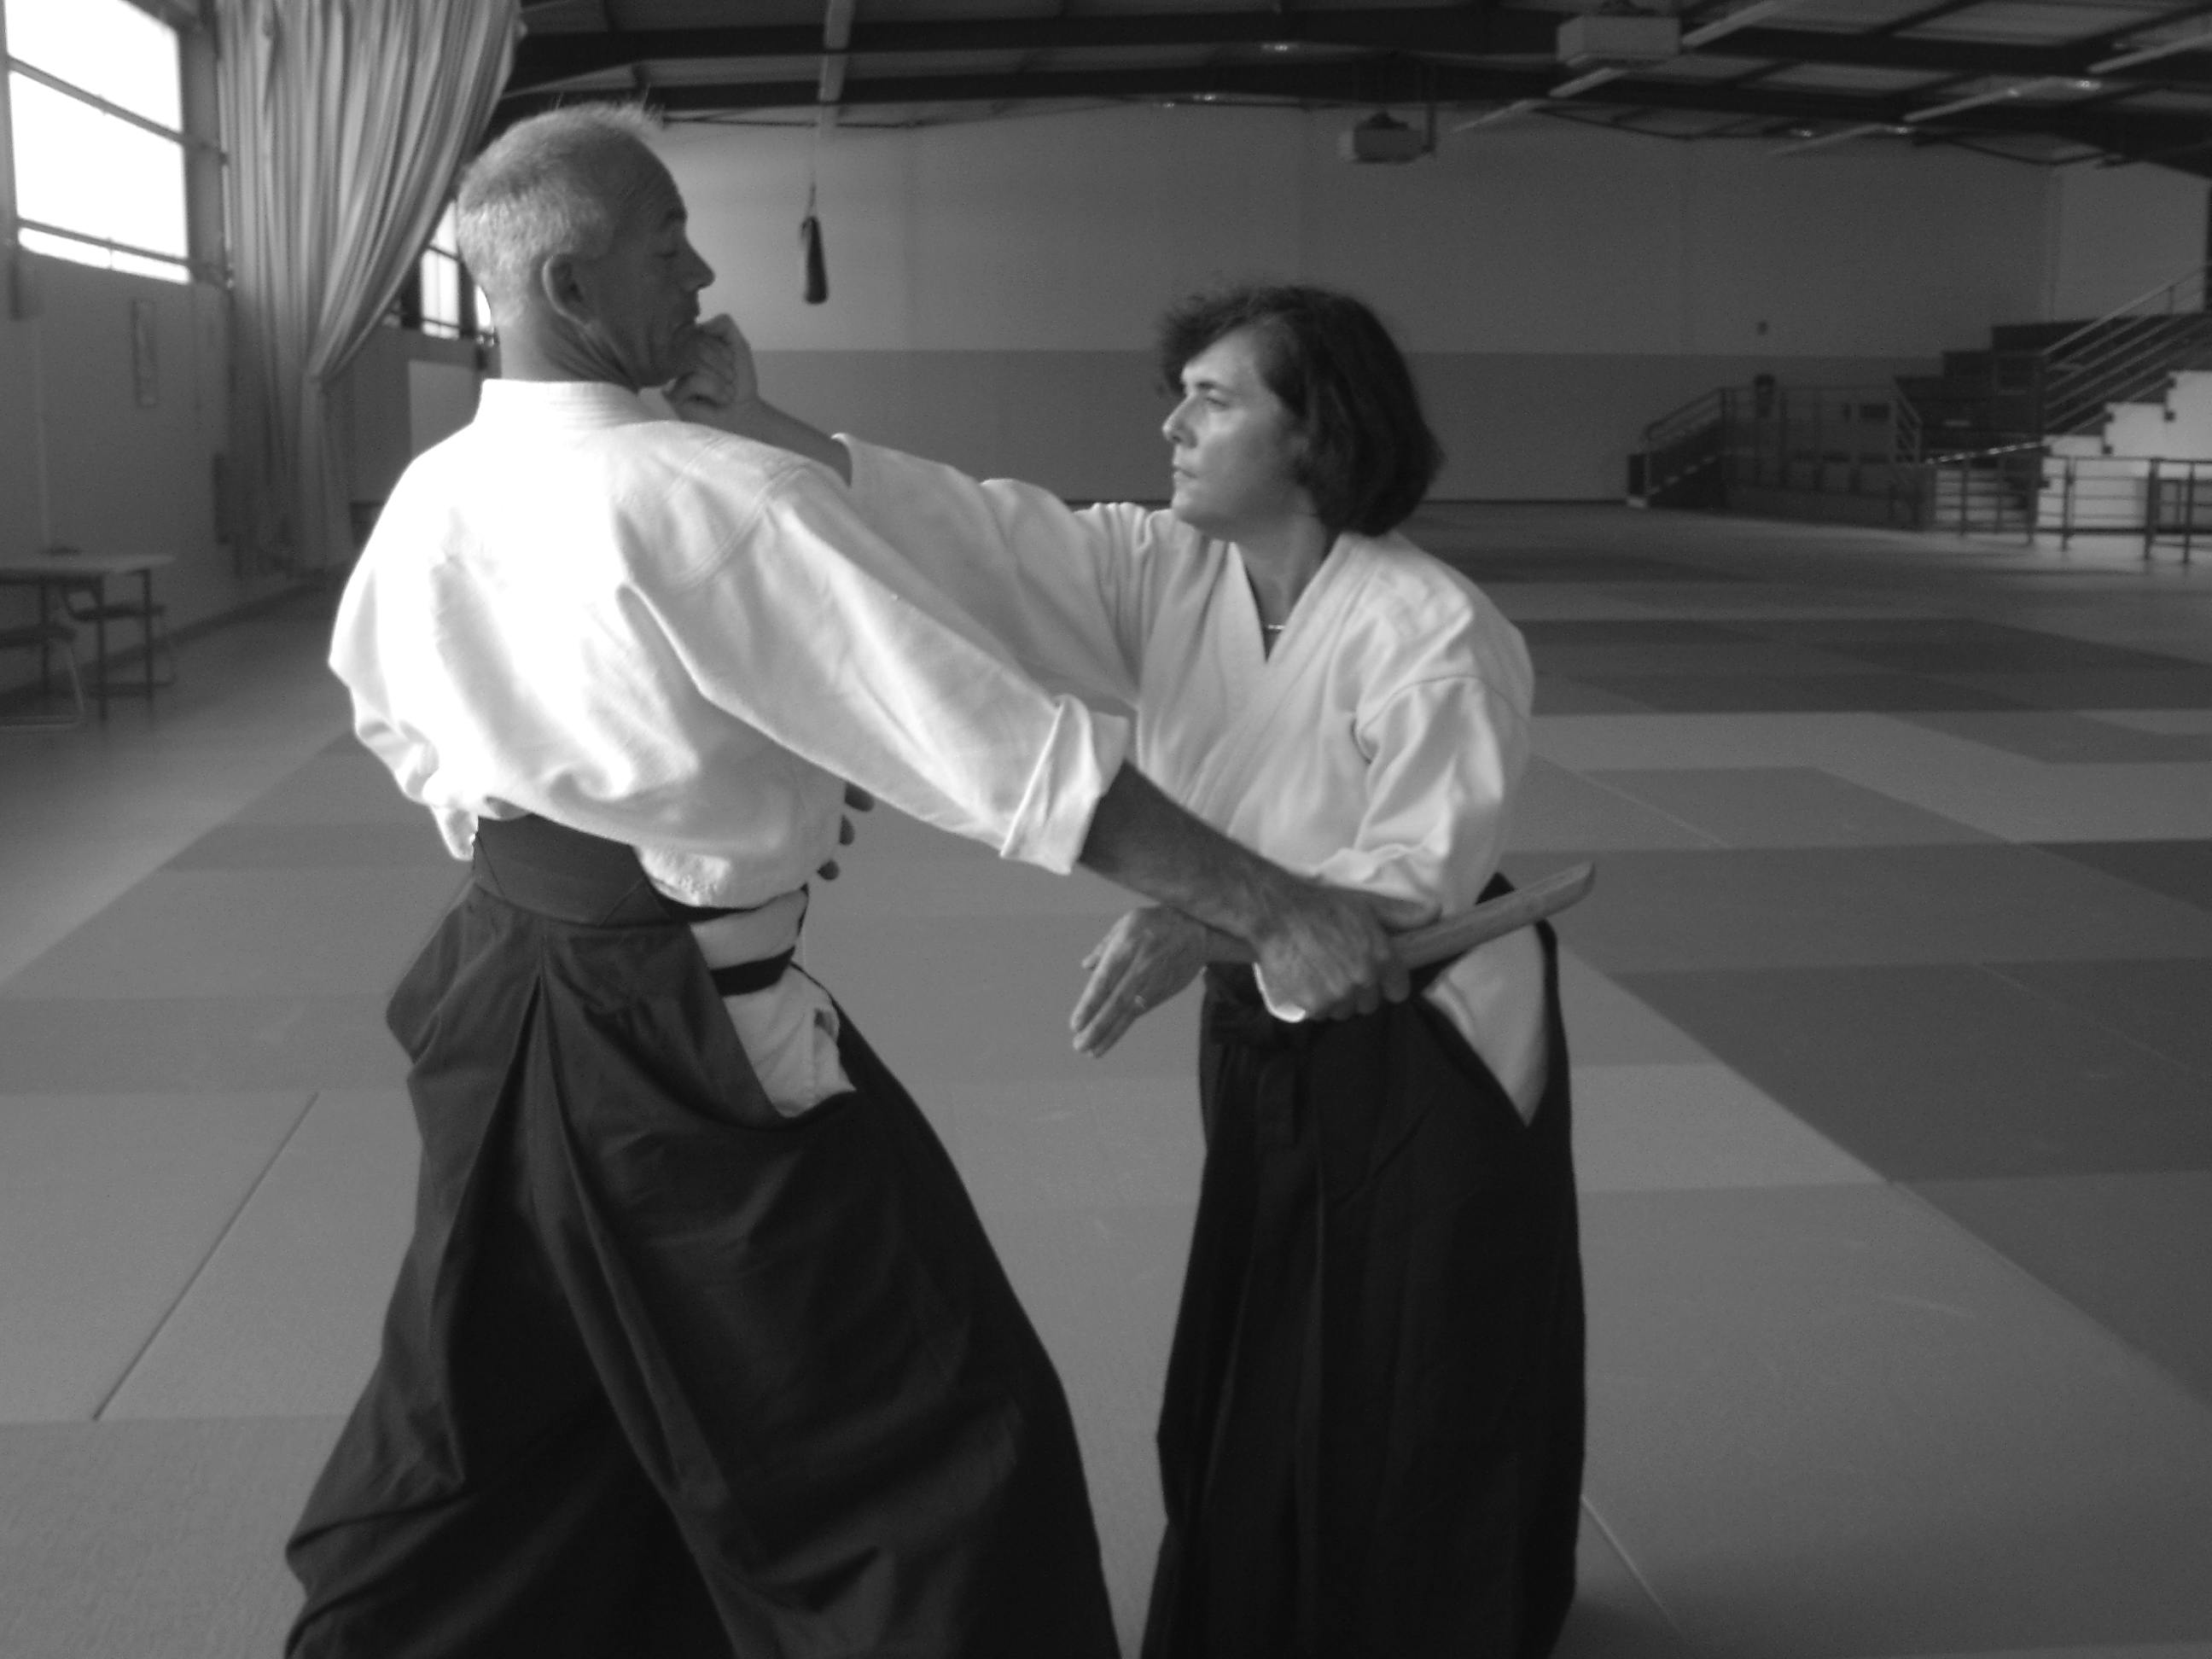 Techniques d'Aikido présentées par Didier Pénissard, enseignant à Parthenay